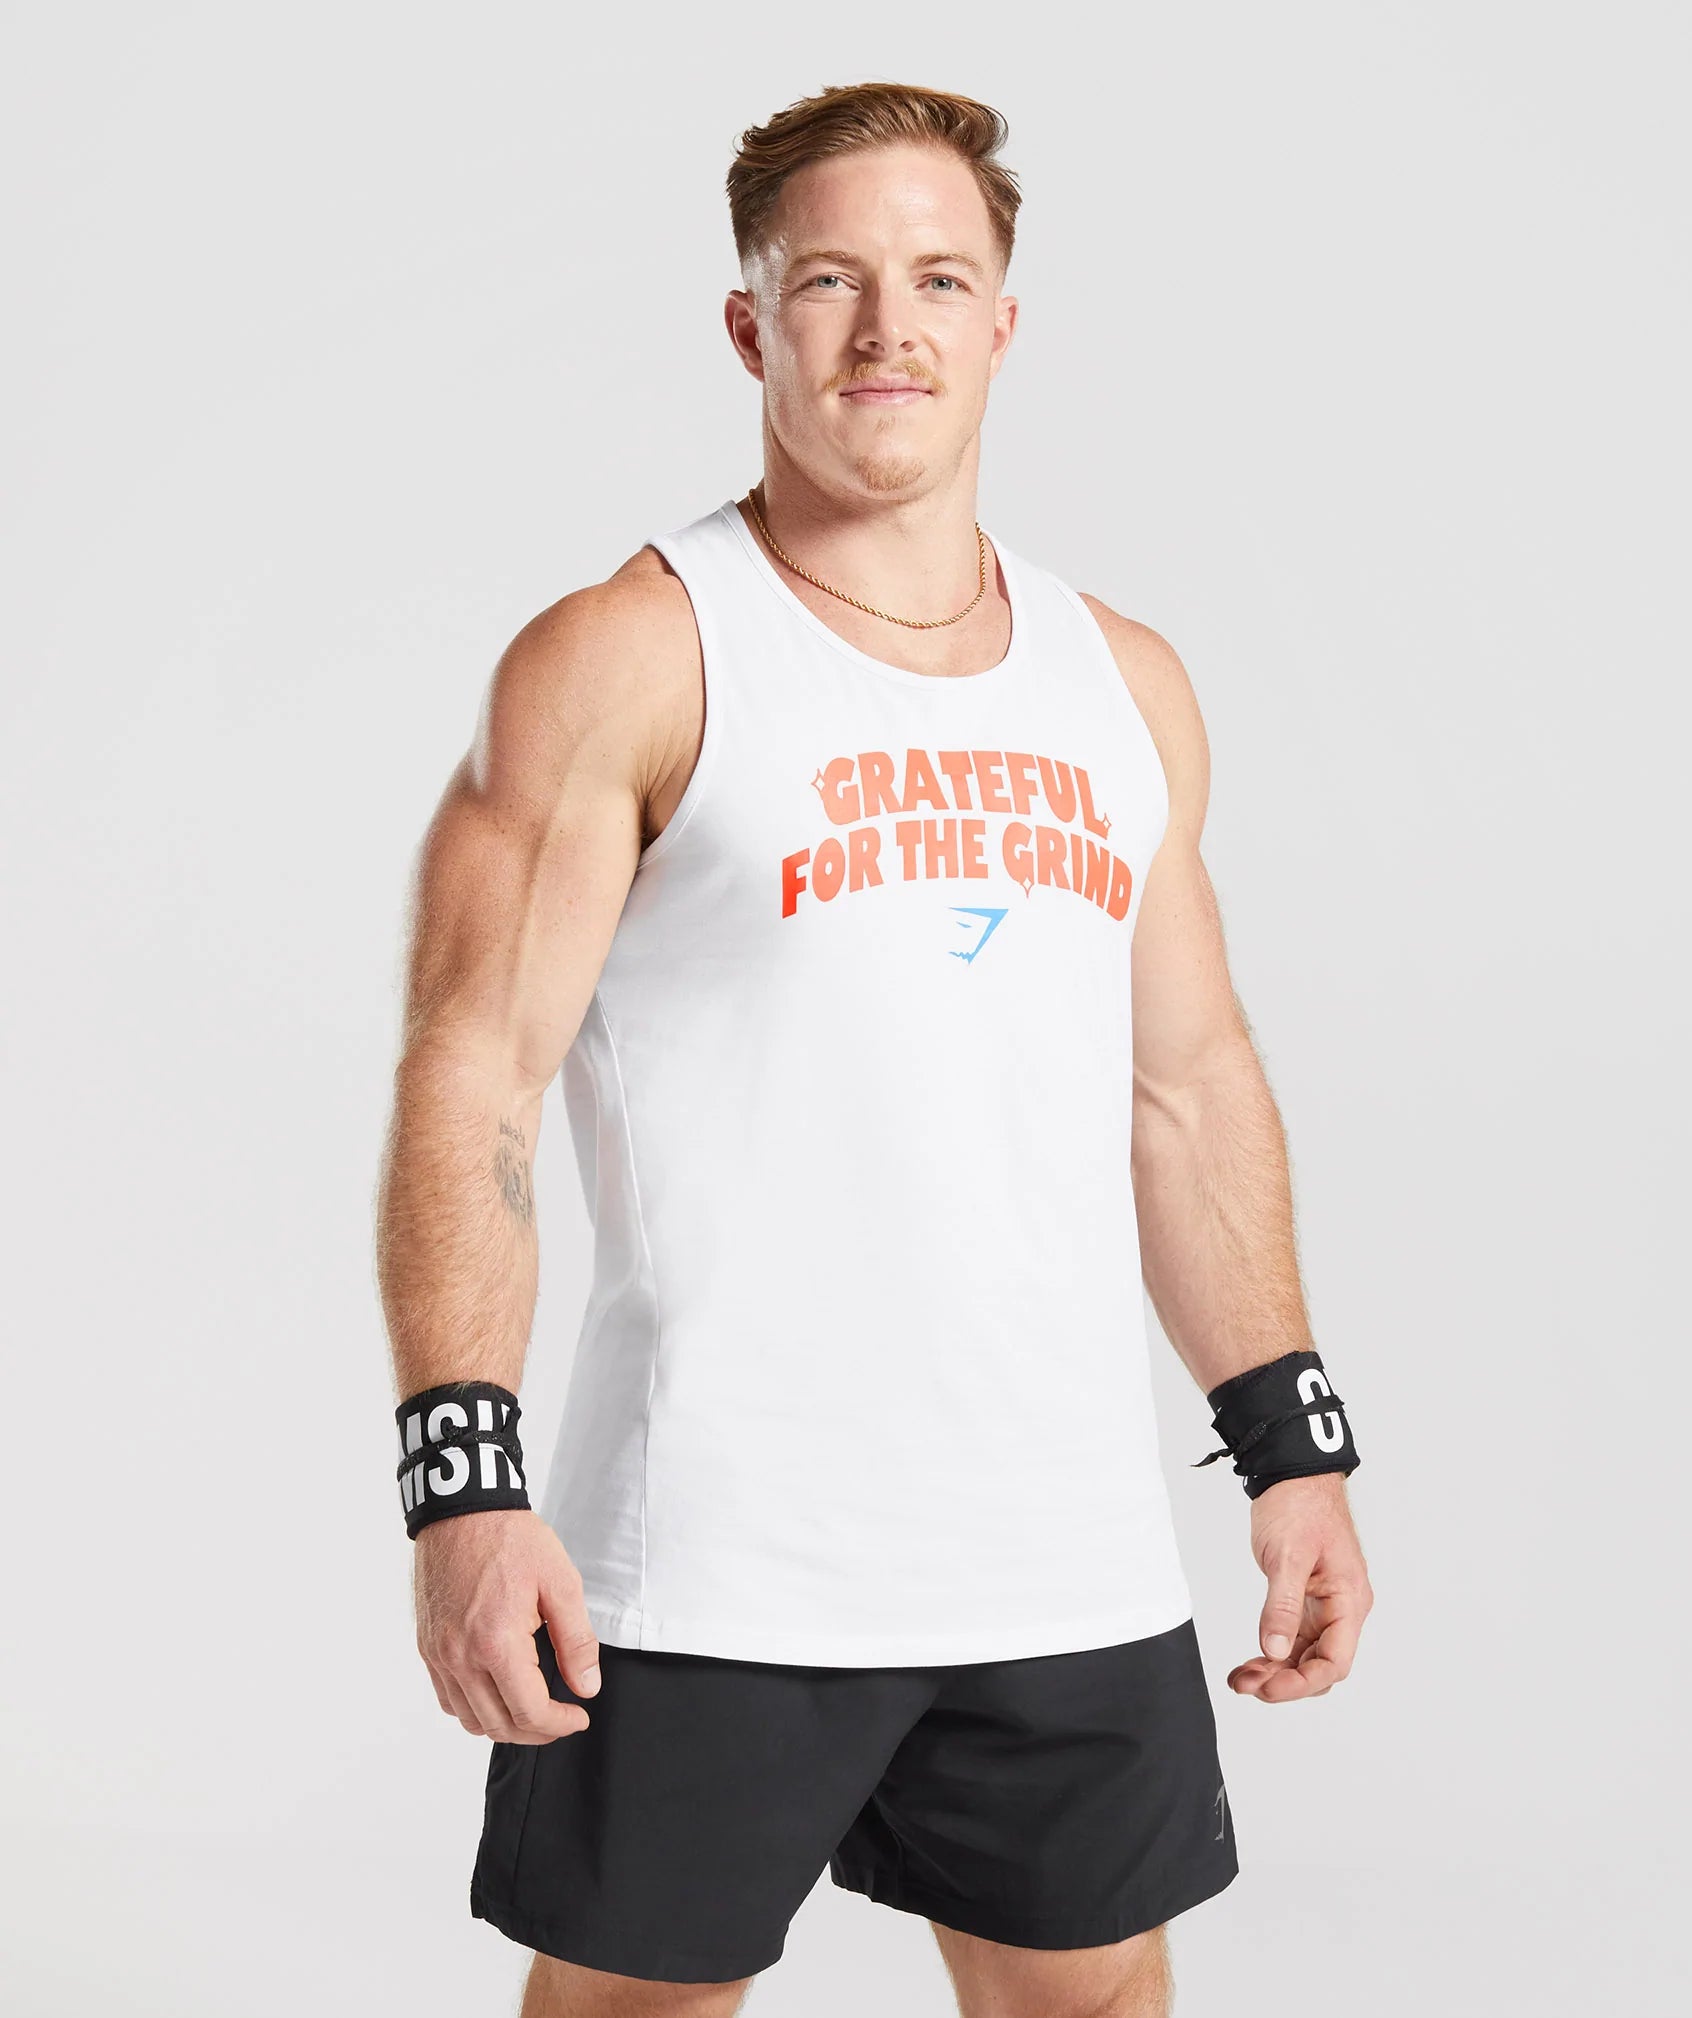 Las mejores ofertas en Camiseta de entrenamiento y gimnasio ejercicio sin  mangas tops y camisetas para hombres